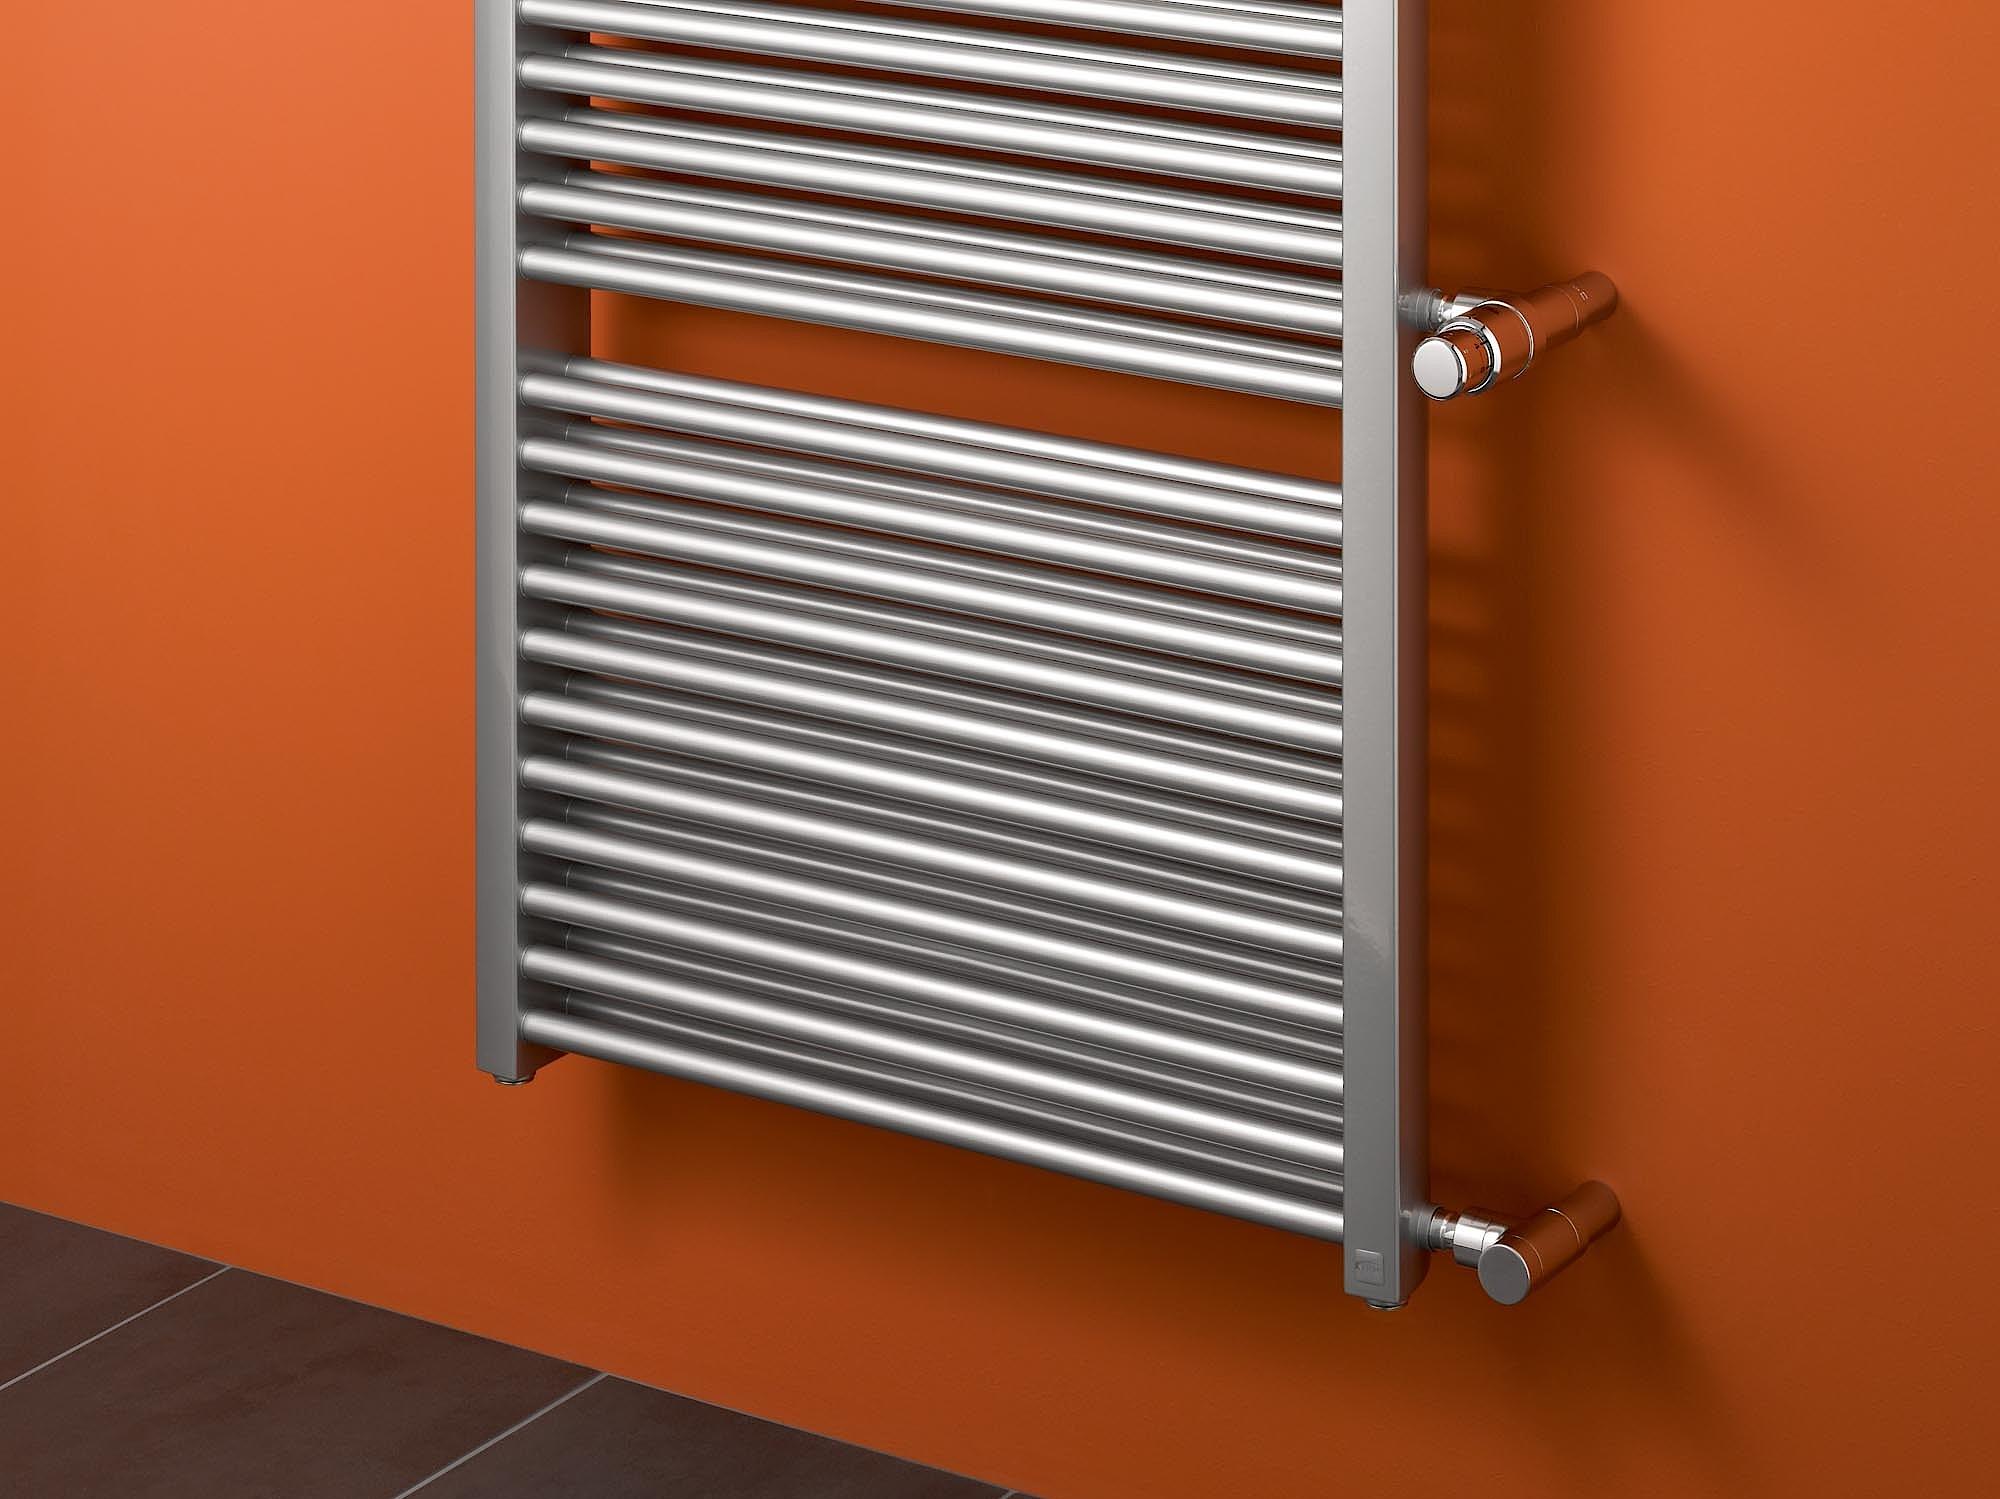 Il radiatore da bagno e di design Kermi Duett offre una soluzione sostitutiva razionale, rapida per la modernizzazione.